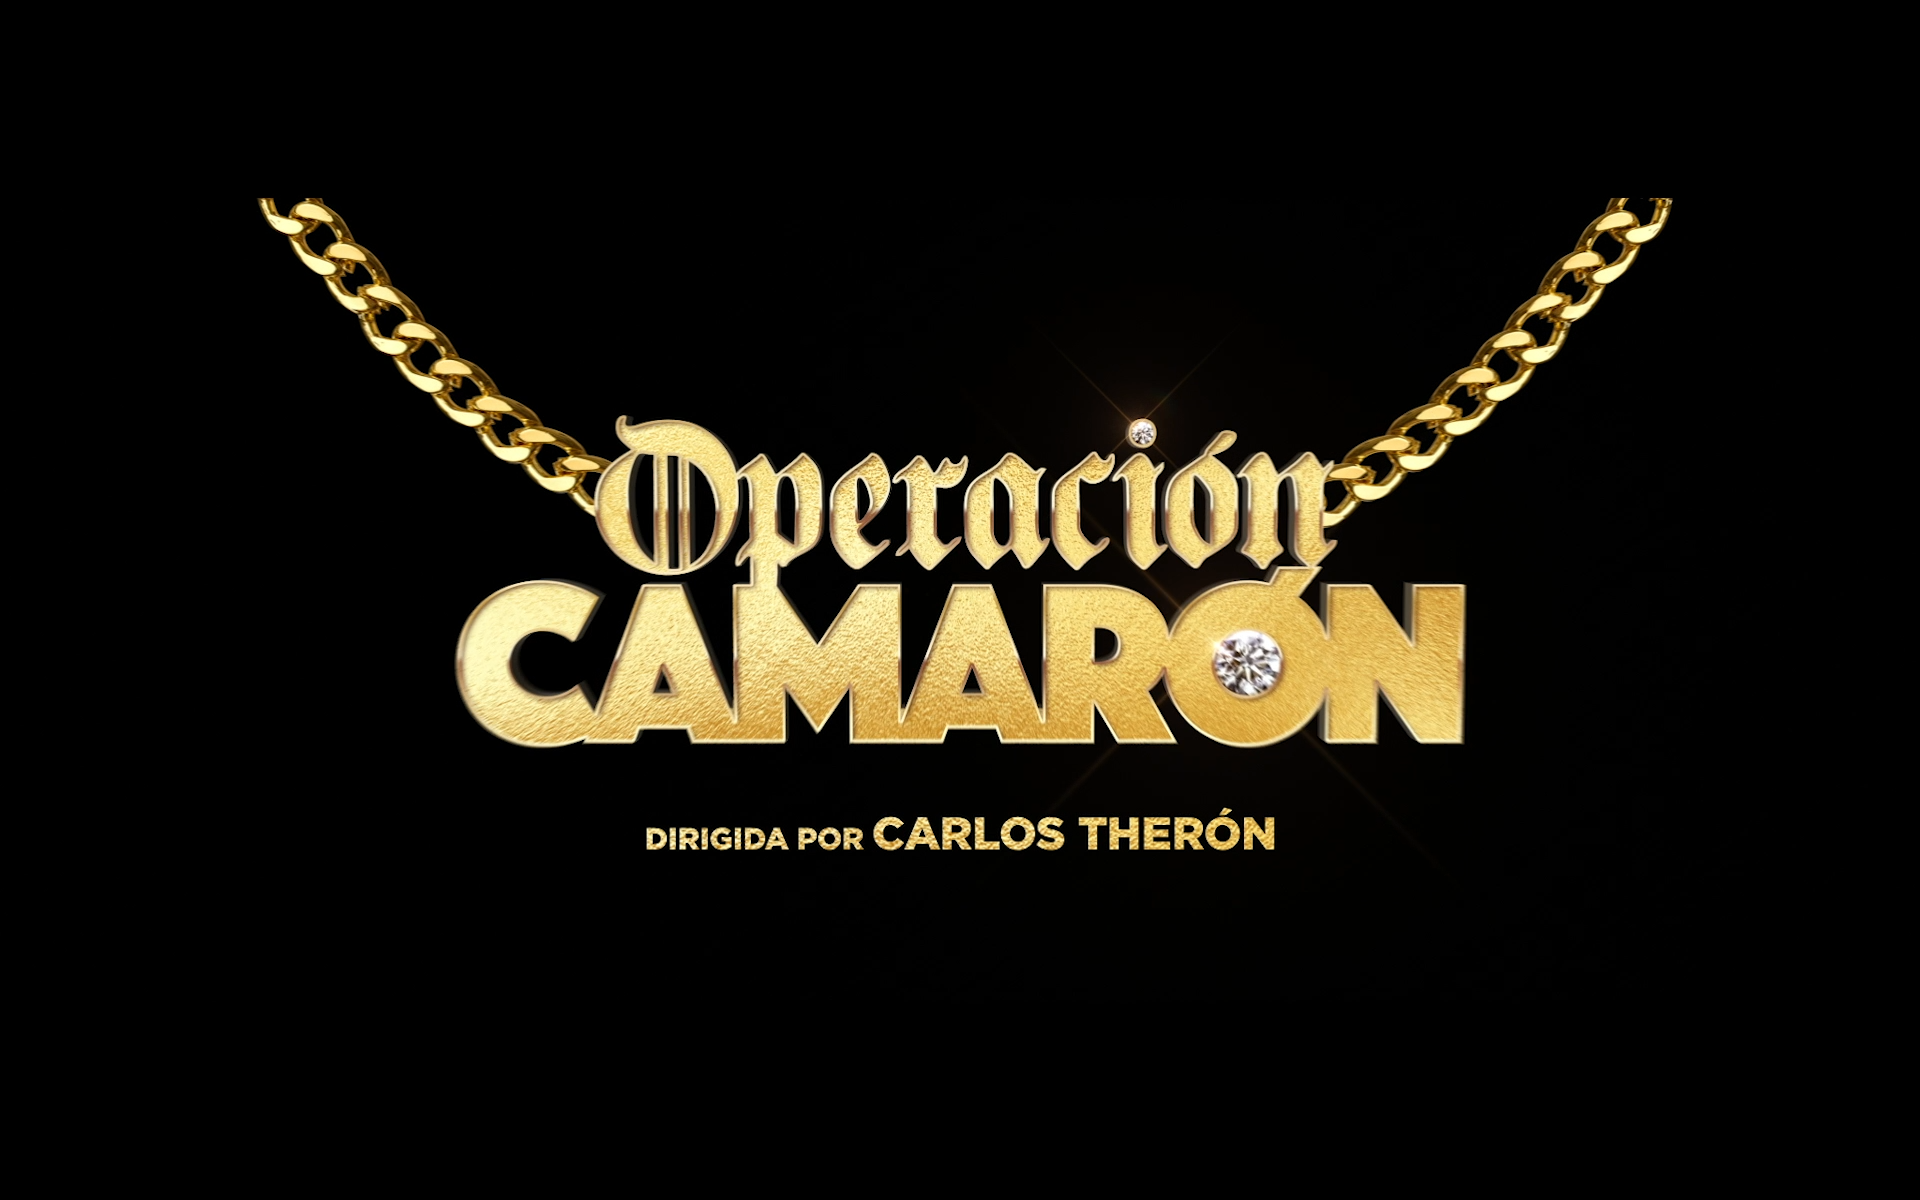 País tribu Peatonal Operación Camarón', la comedia de acción más trapera del cine español,  presenta su tráiler